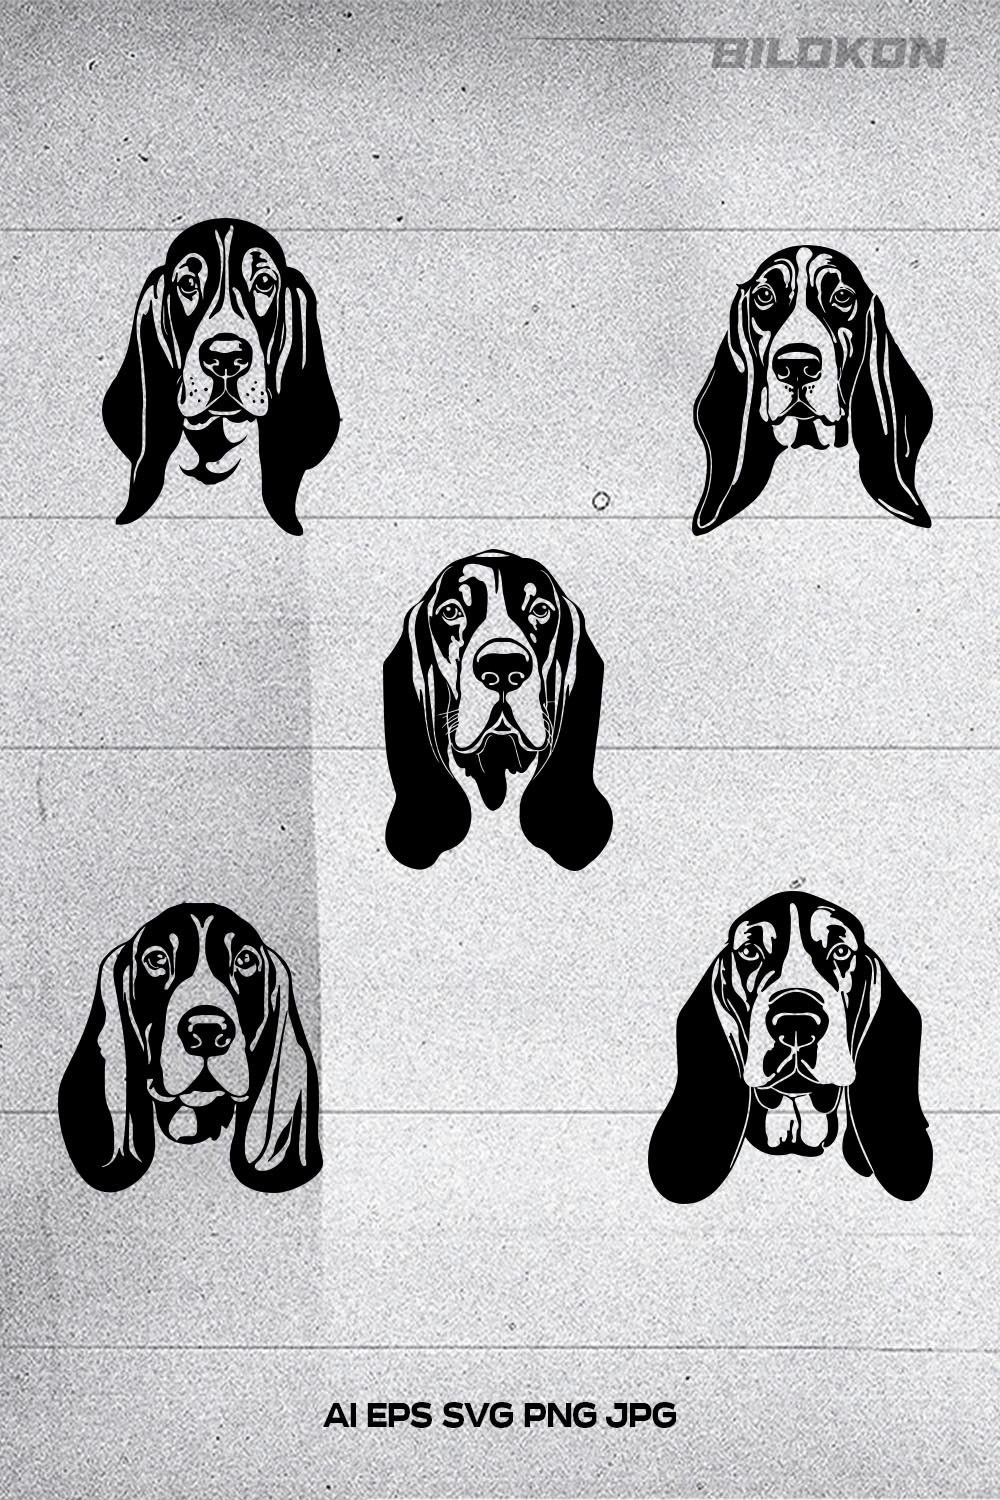 Basset hound dog head, SVG, Vector, Illustration, SVG Bundle pinterest preview image.